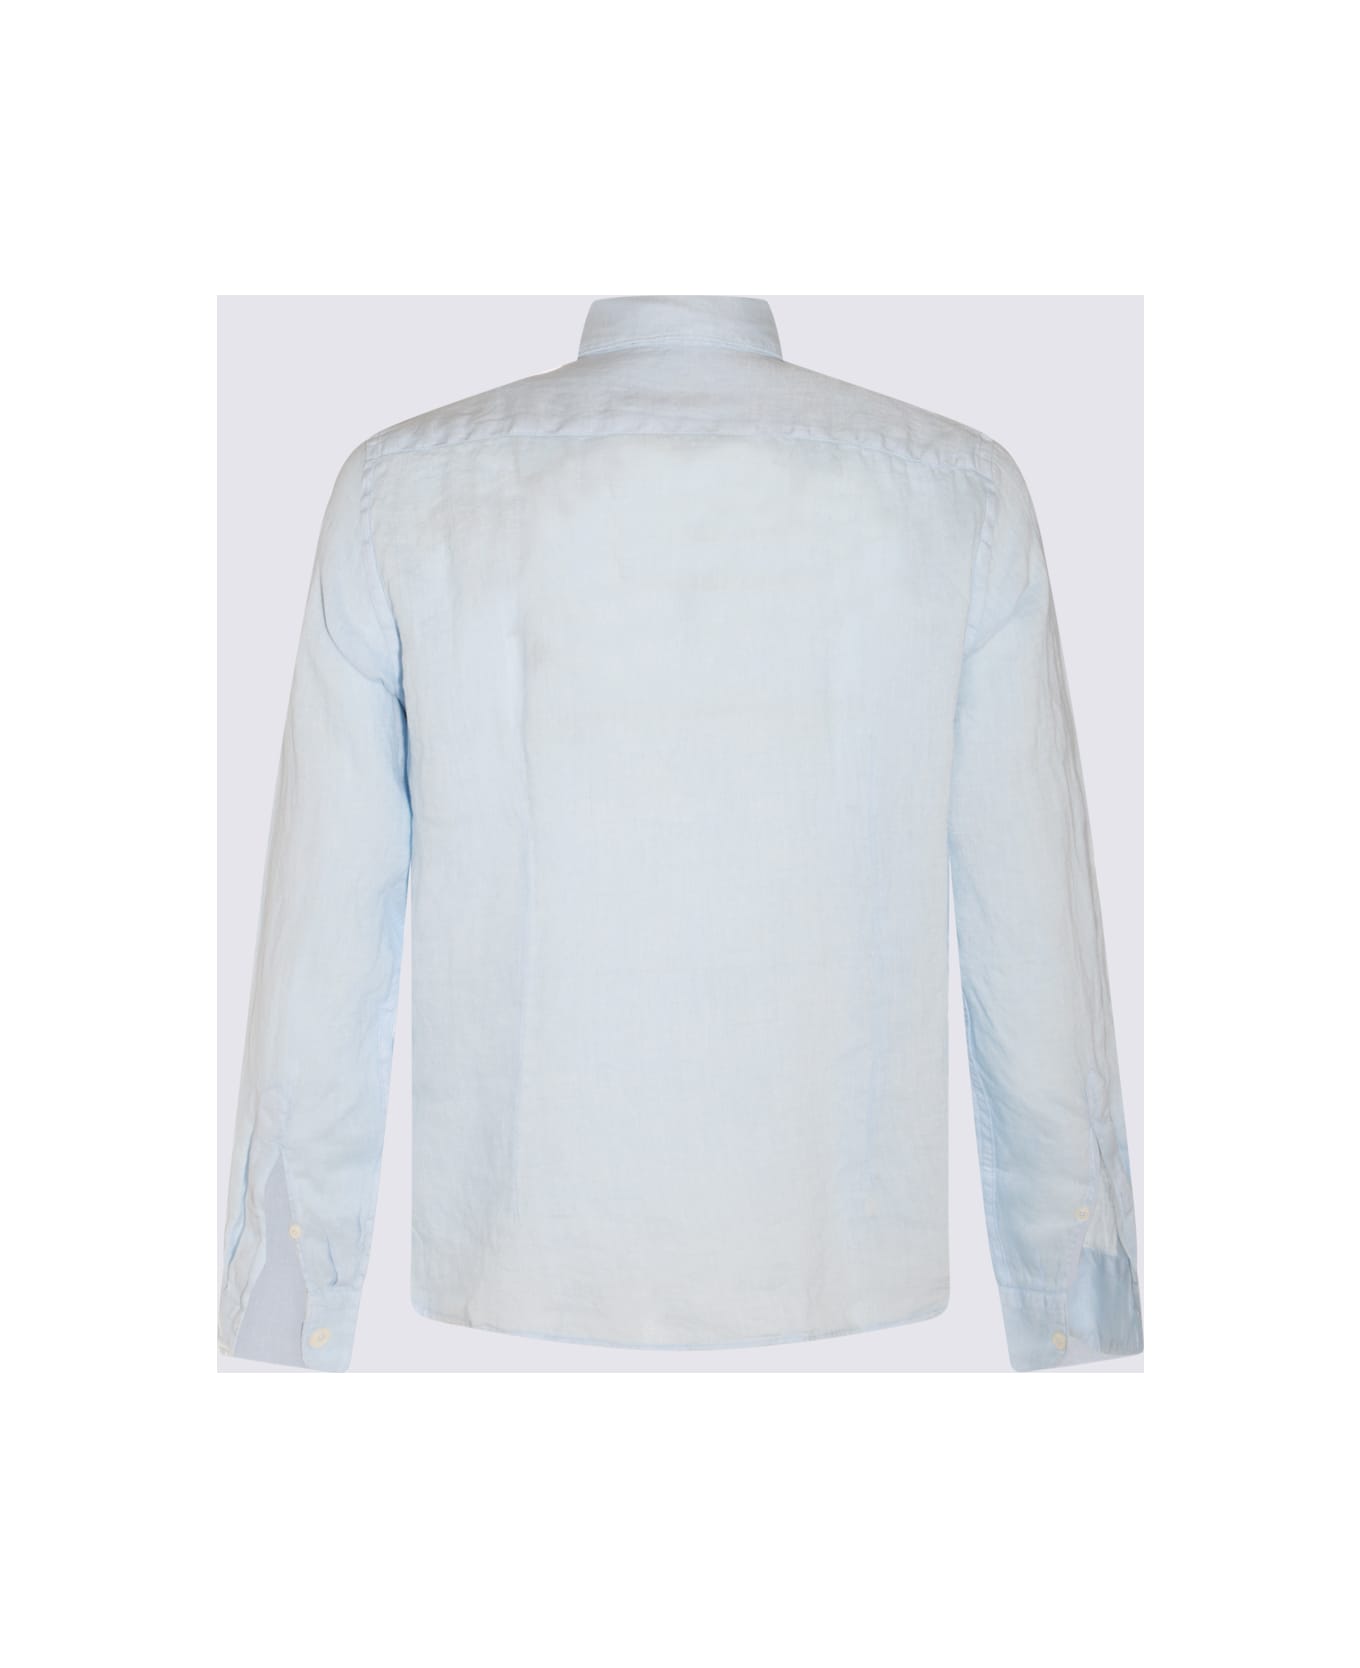 Altea Light Blue Linen Shirt - Clear Blue シャツ